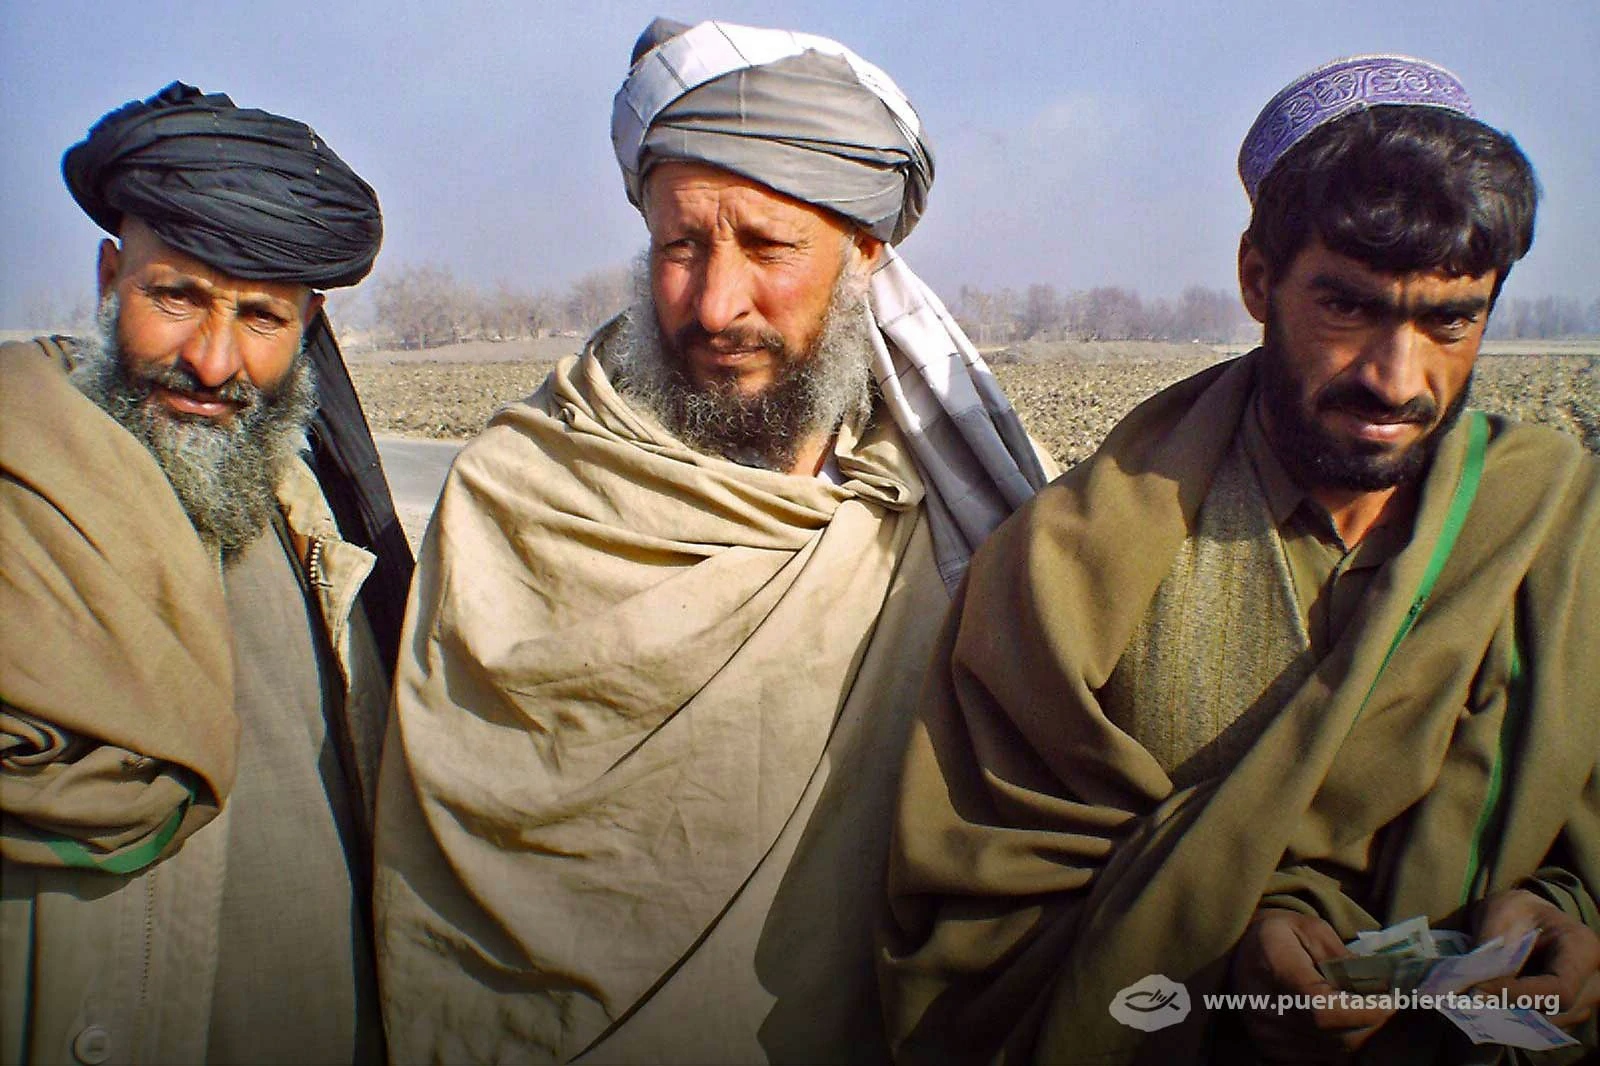 Para afganos como estos, seguir a Cristo es un desrespecho a la familia y a la comunidad